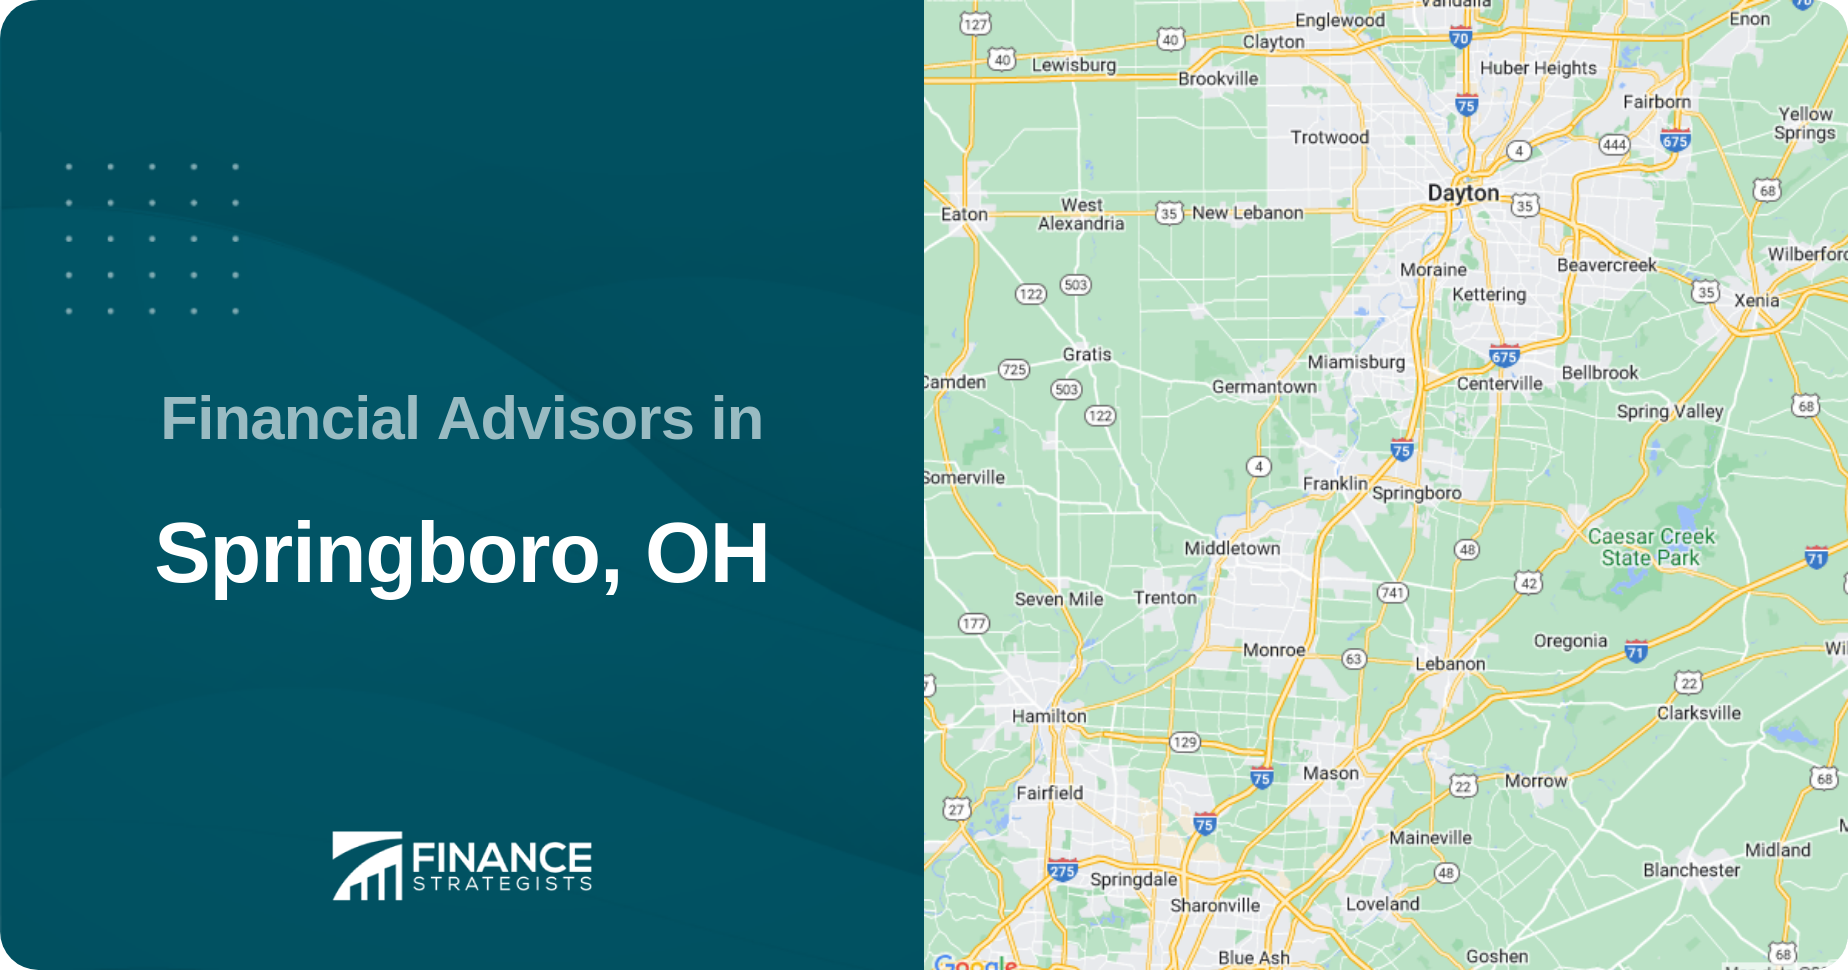 Financial Advisors in Springboro, OH